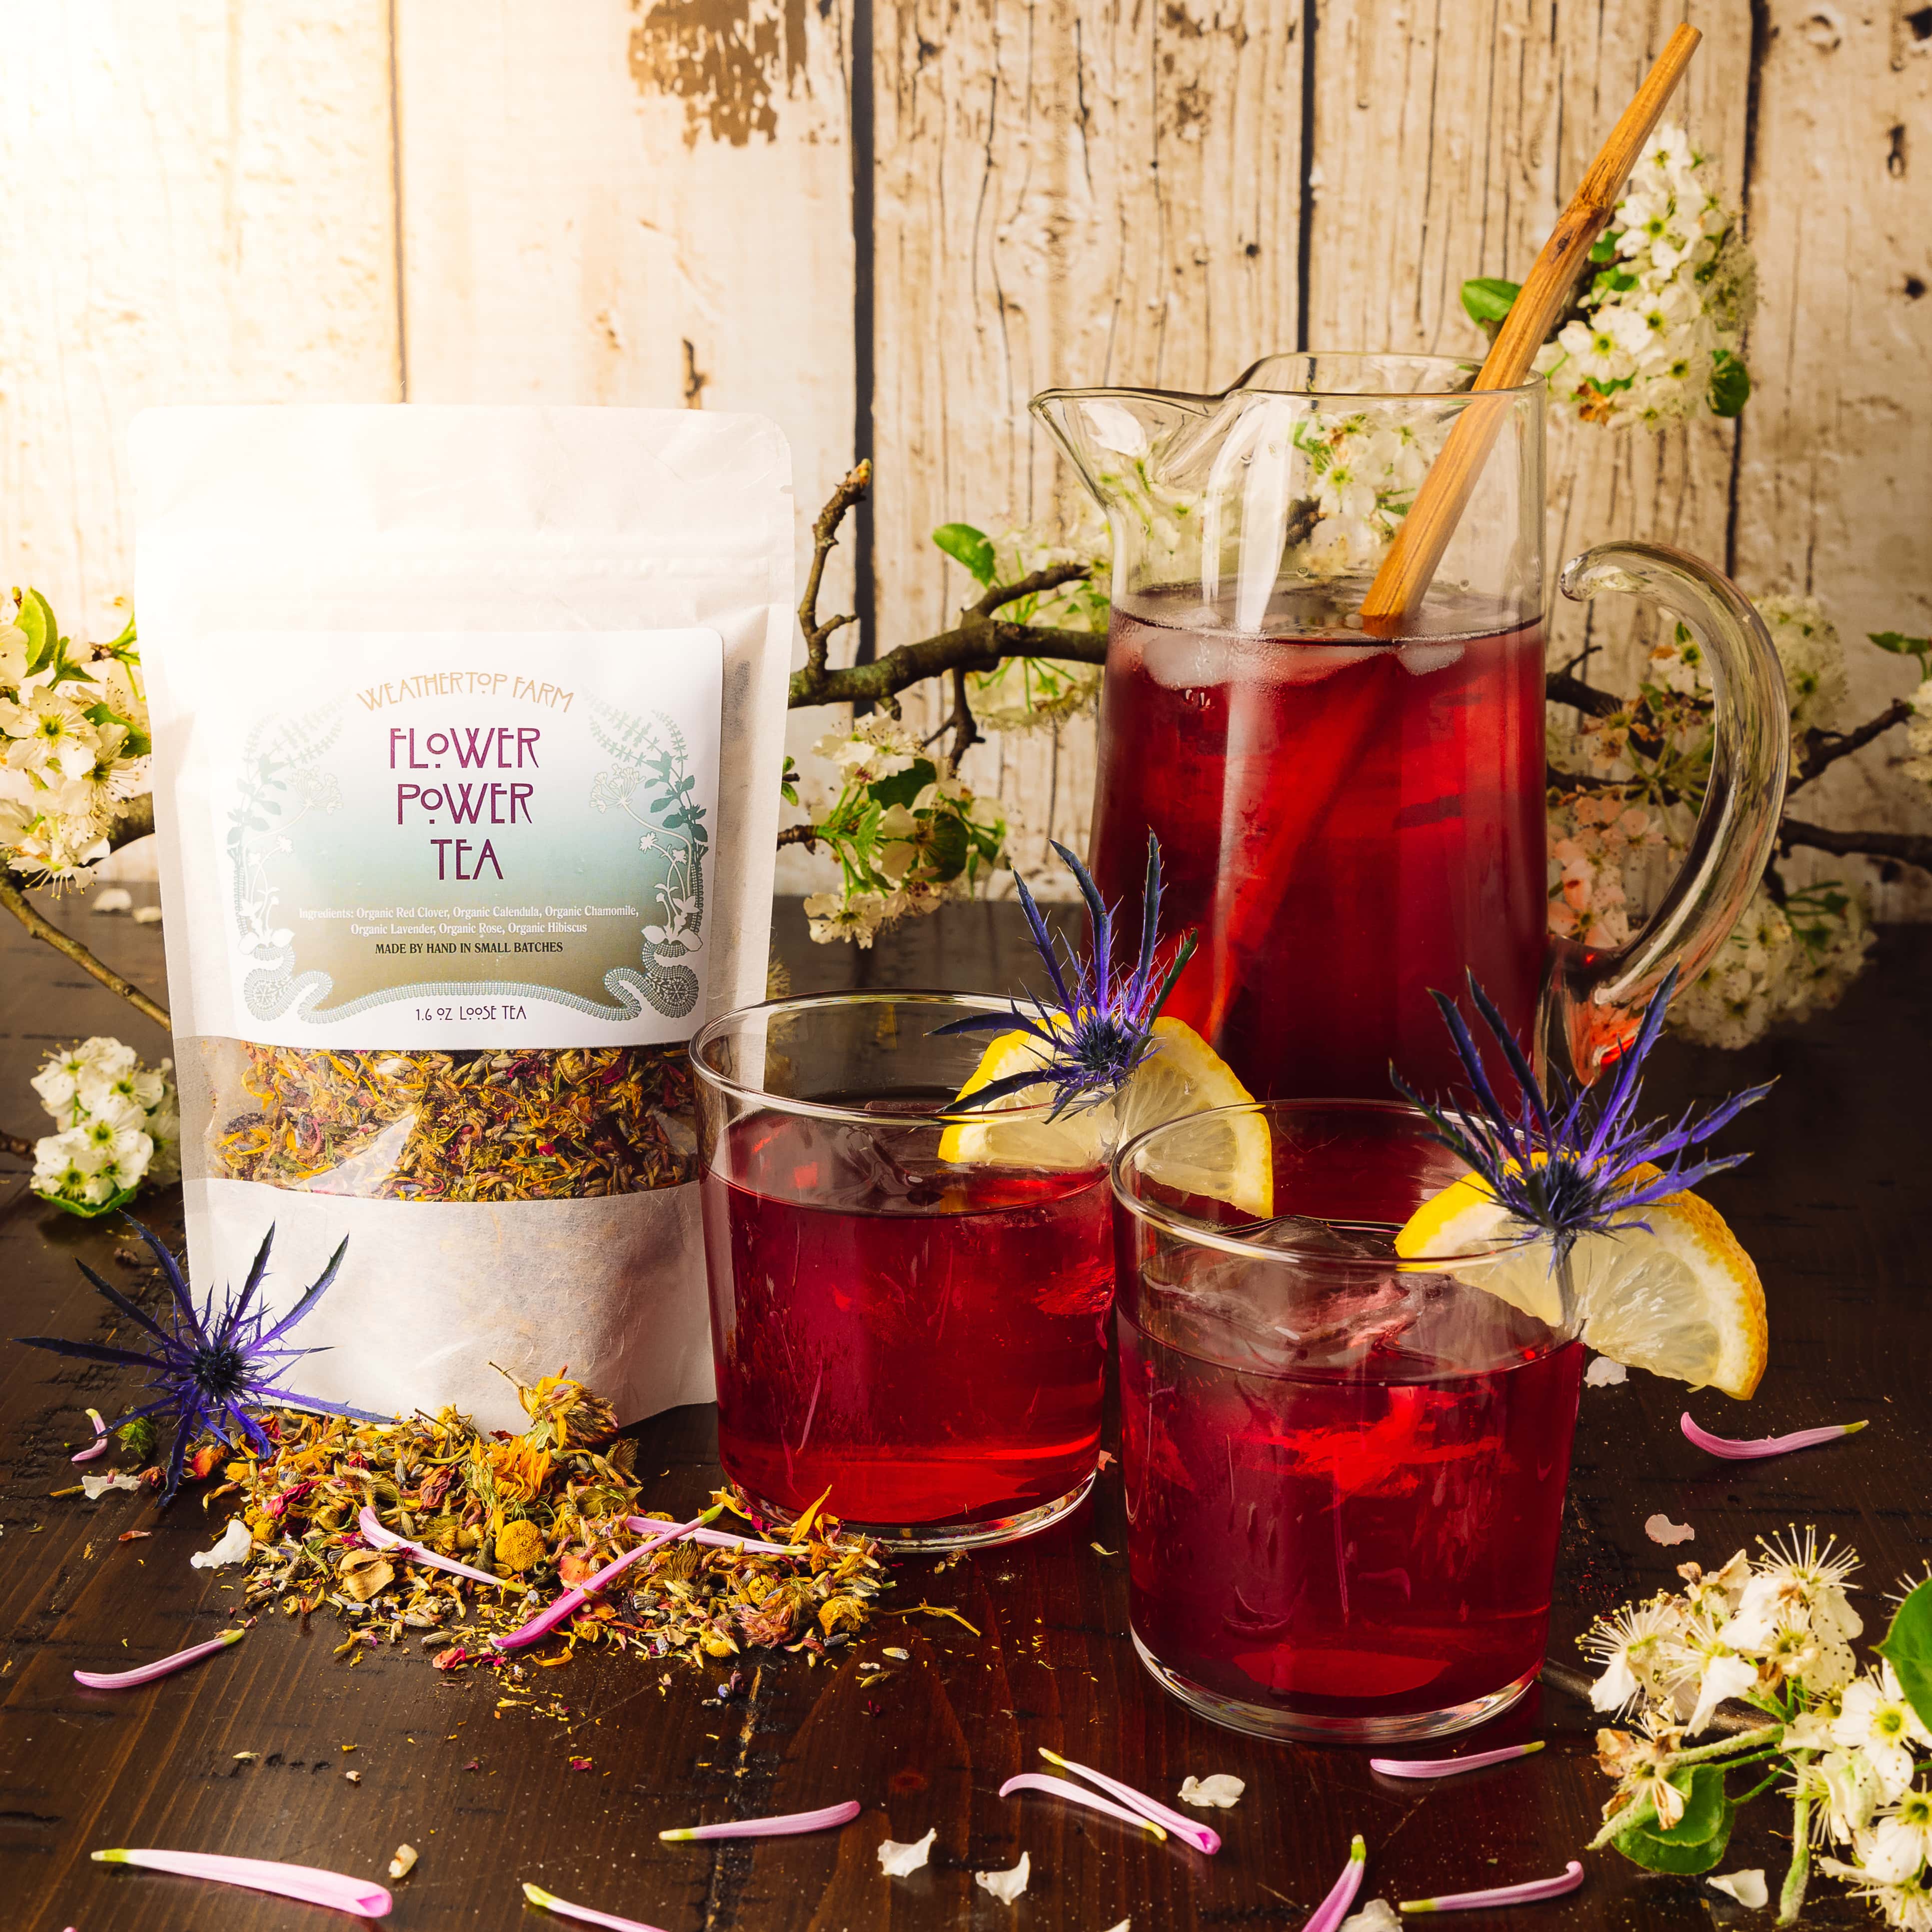 Organic Lavender Flowers - Loose Tea 1 oz